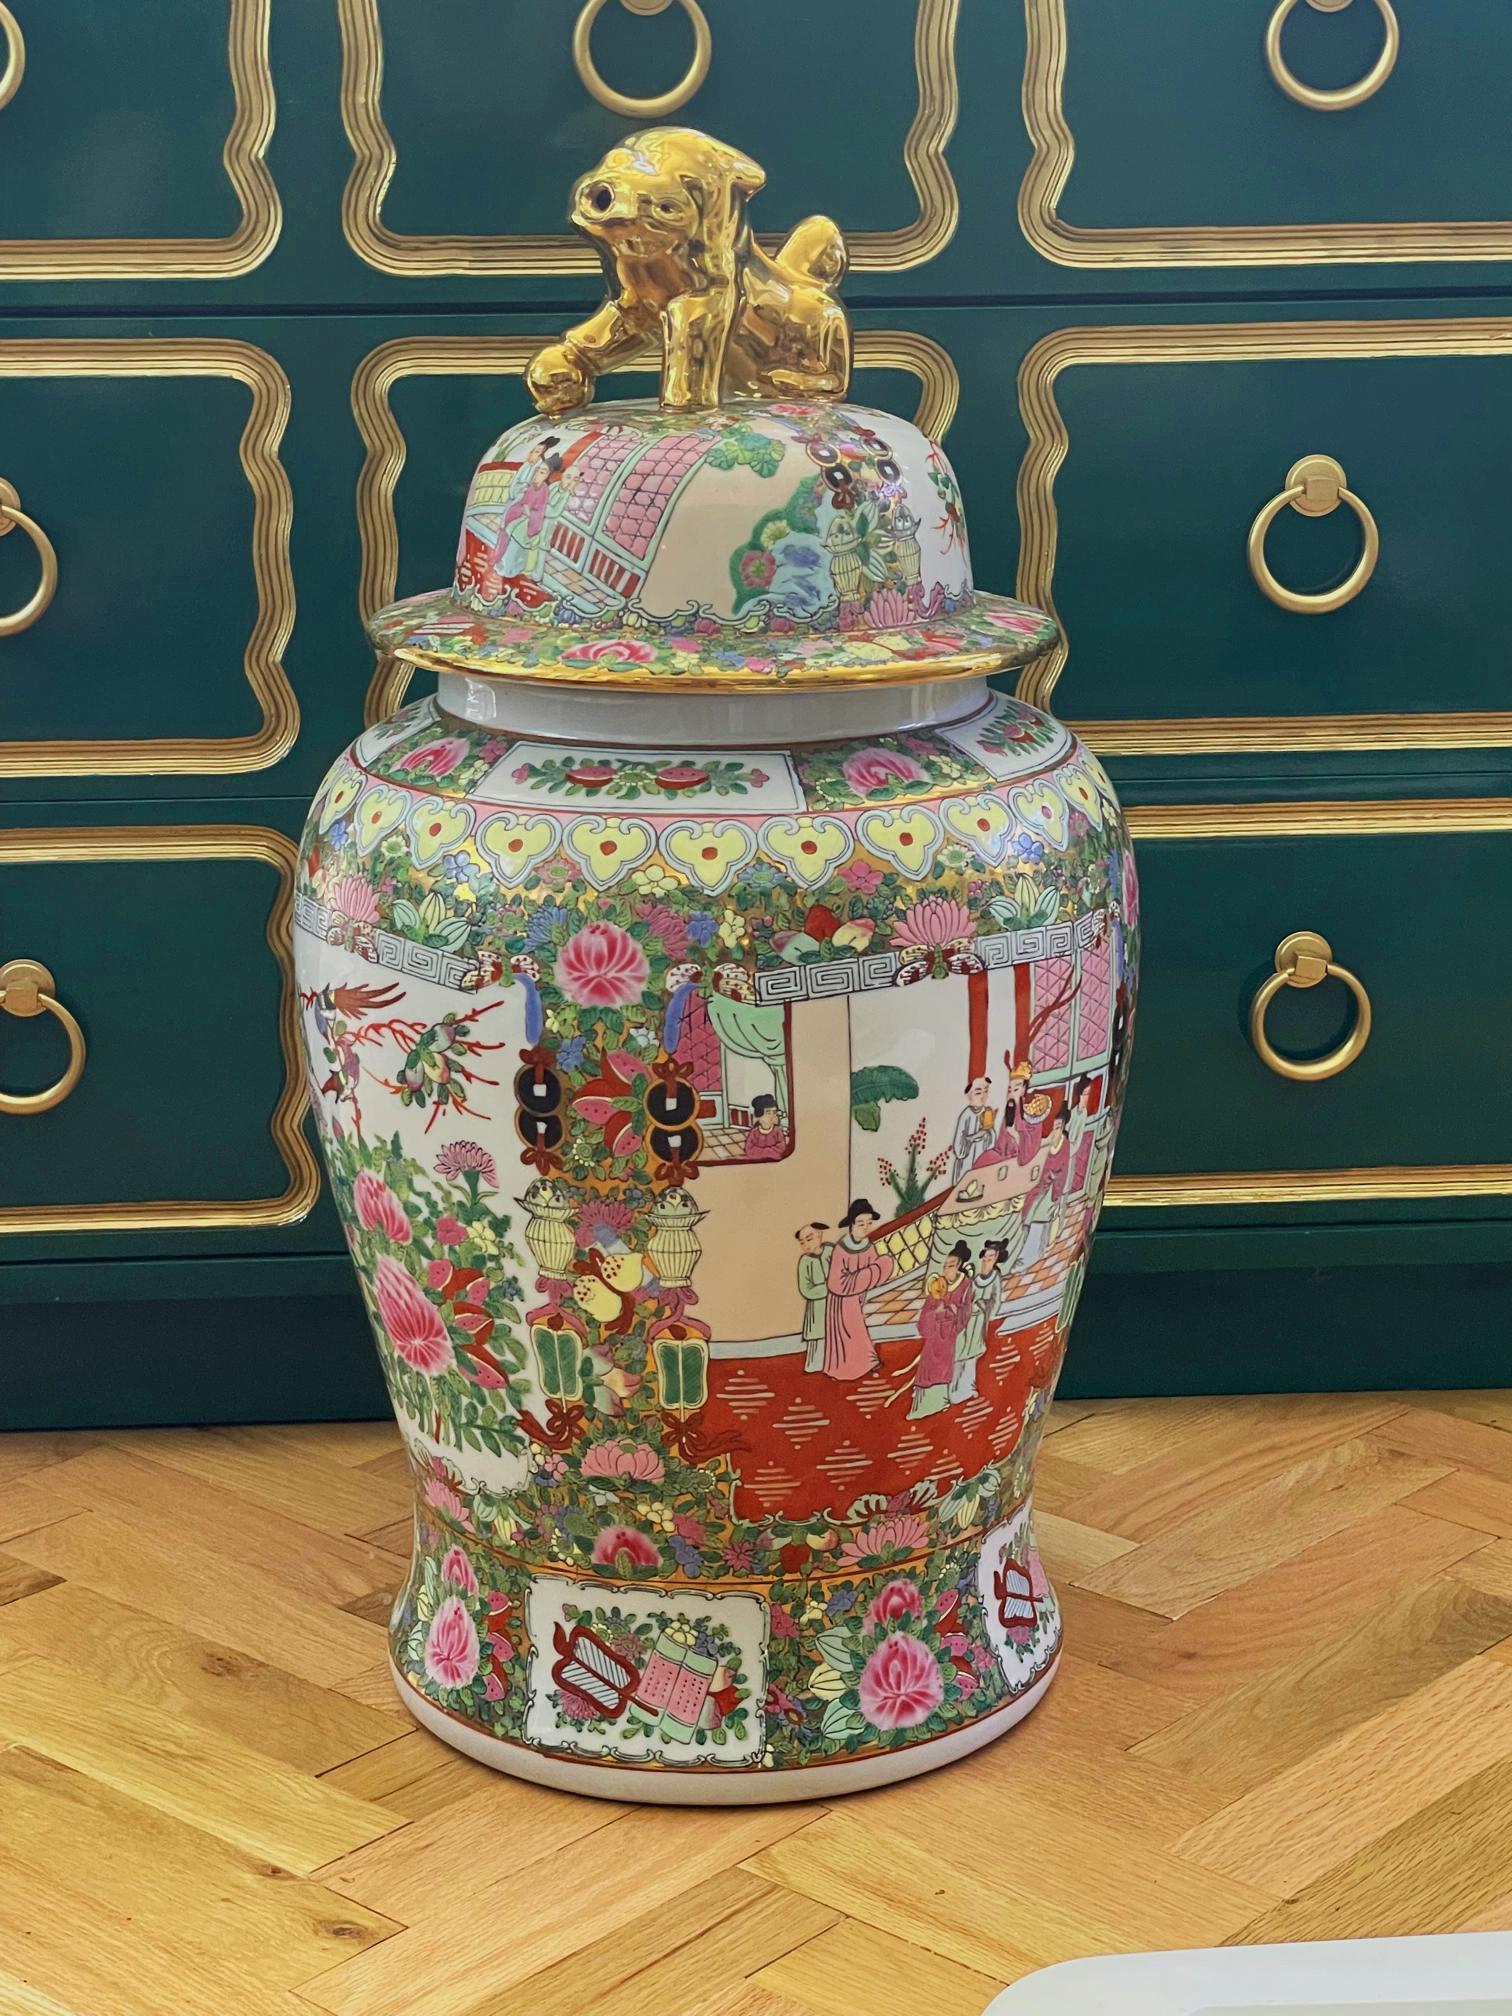 Große Bodenvase oder Urne aus Keramik mit handbemaltem Korpus und Deckel in chinesischer Chinoiserie, auf denen orientalische Szenen mit Vögeln und Pflanzen abgebildet sind. Der gewölbte Deckel ist mit einem goldenen Foo Dog als Griff versehen.